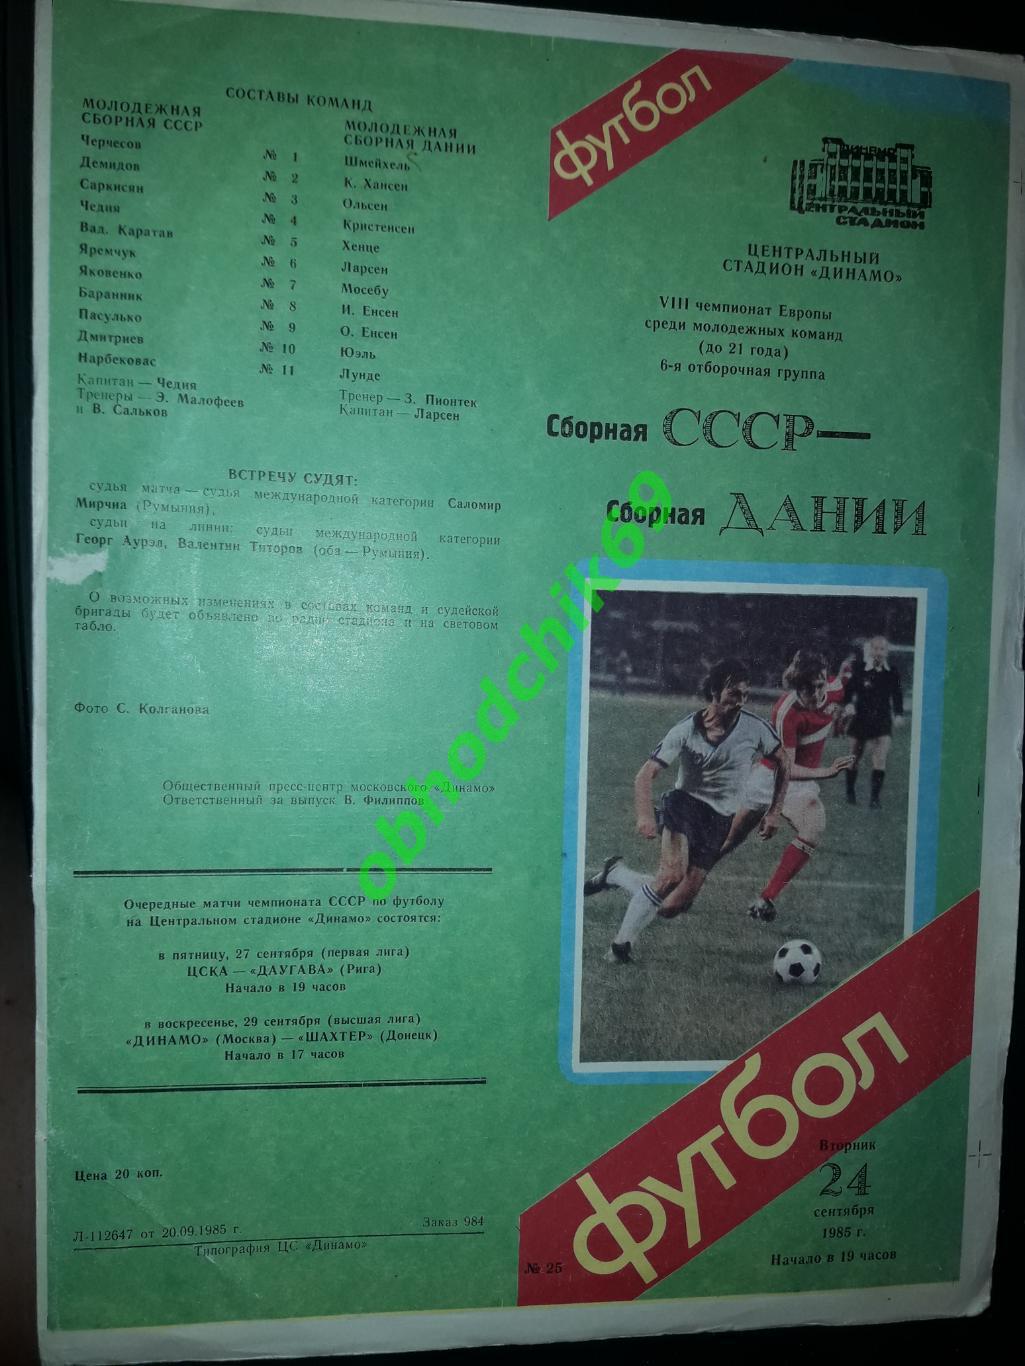 СССР сборная- Дания 24 09 1985 молодежные ЧЕ